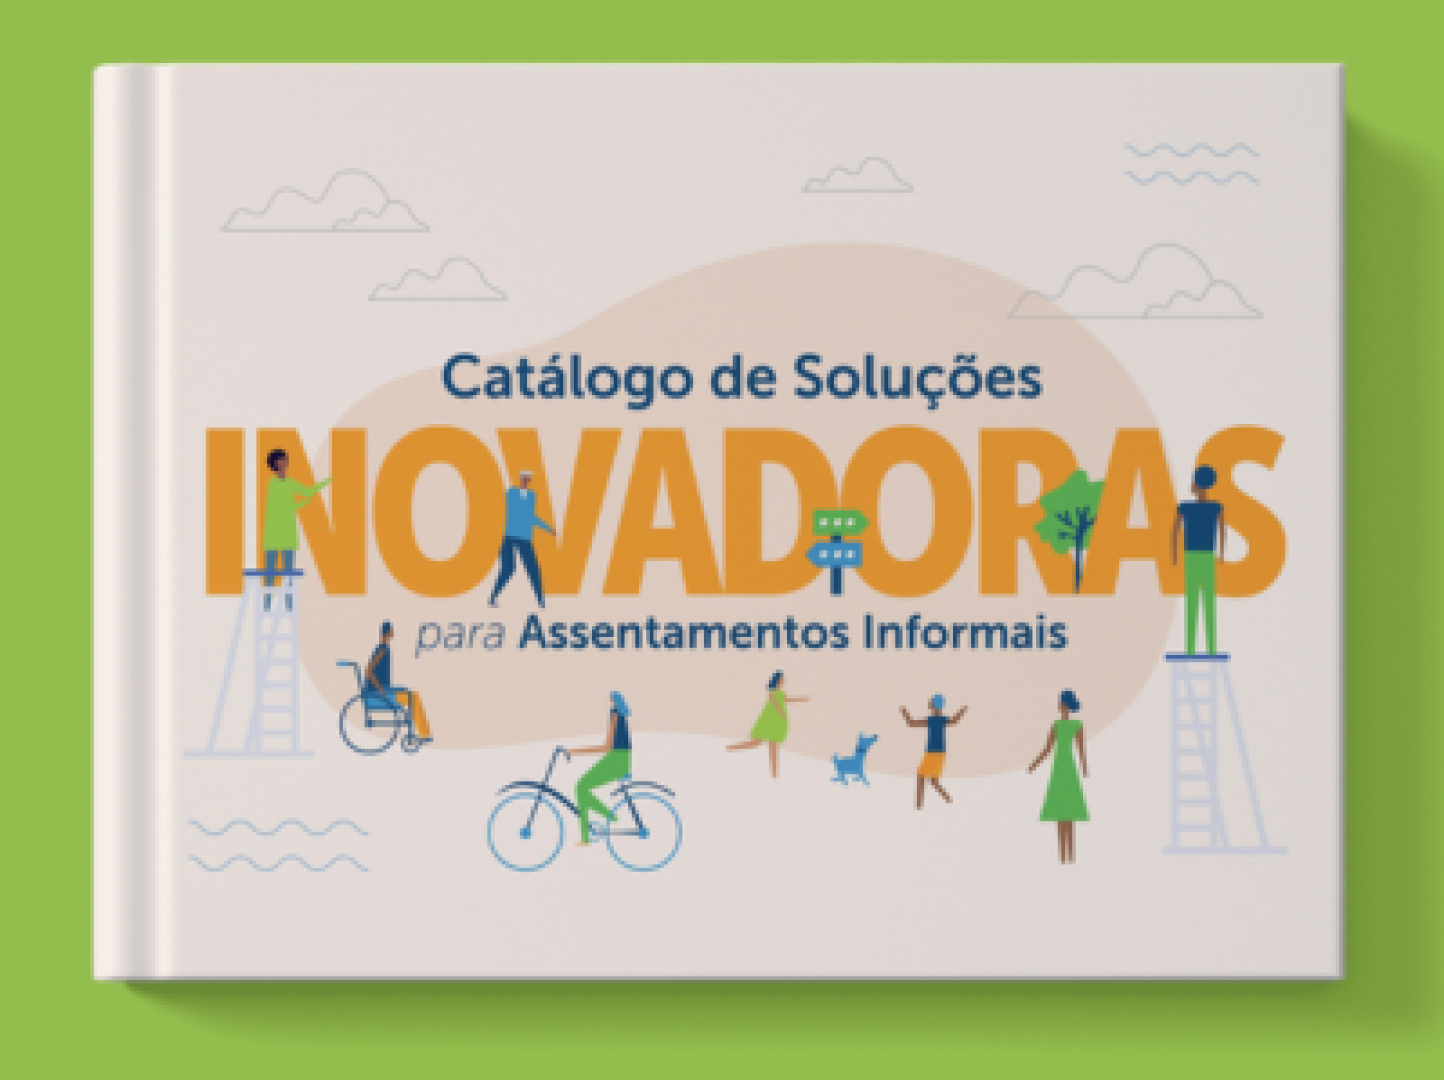 Catálogo de Soluções Inovadoras para Assentamentos Informais